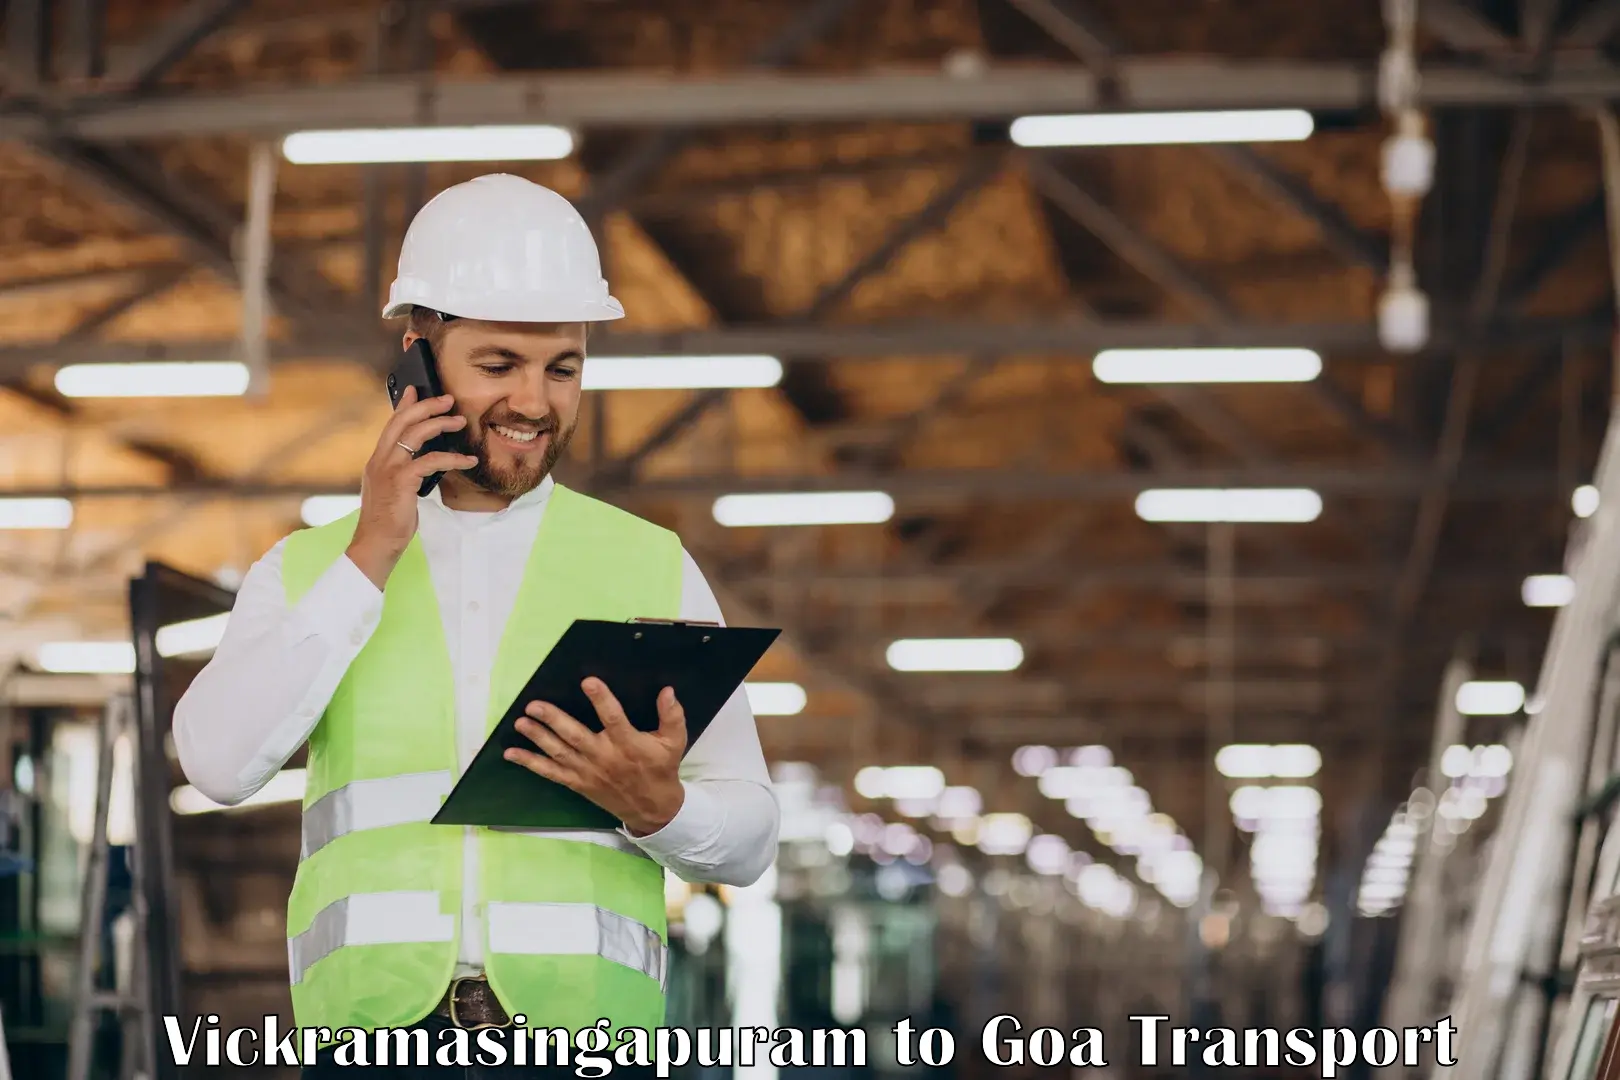 Transport services Vickramasingapuram to Goa University